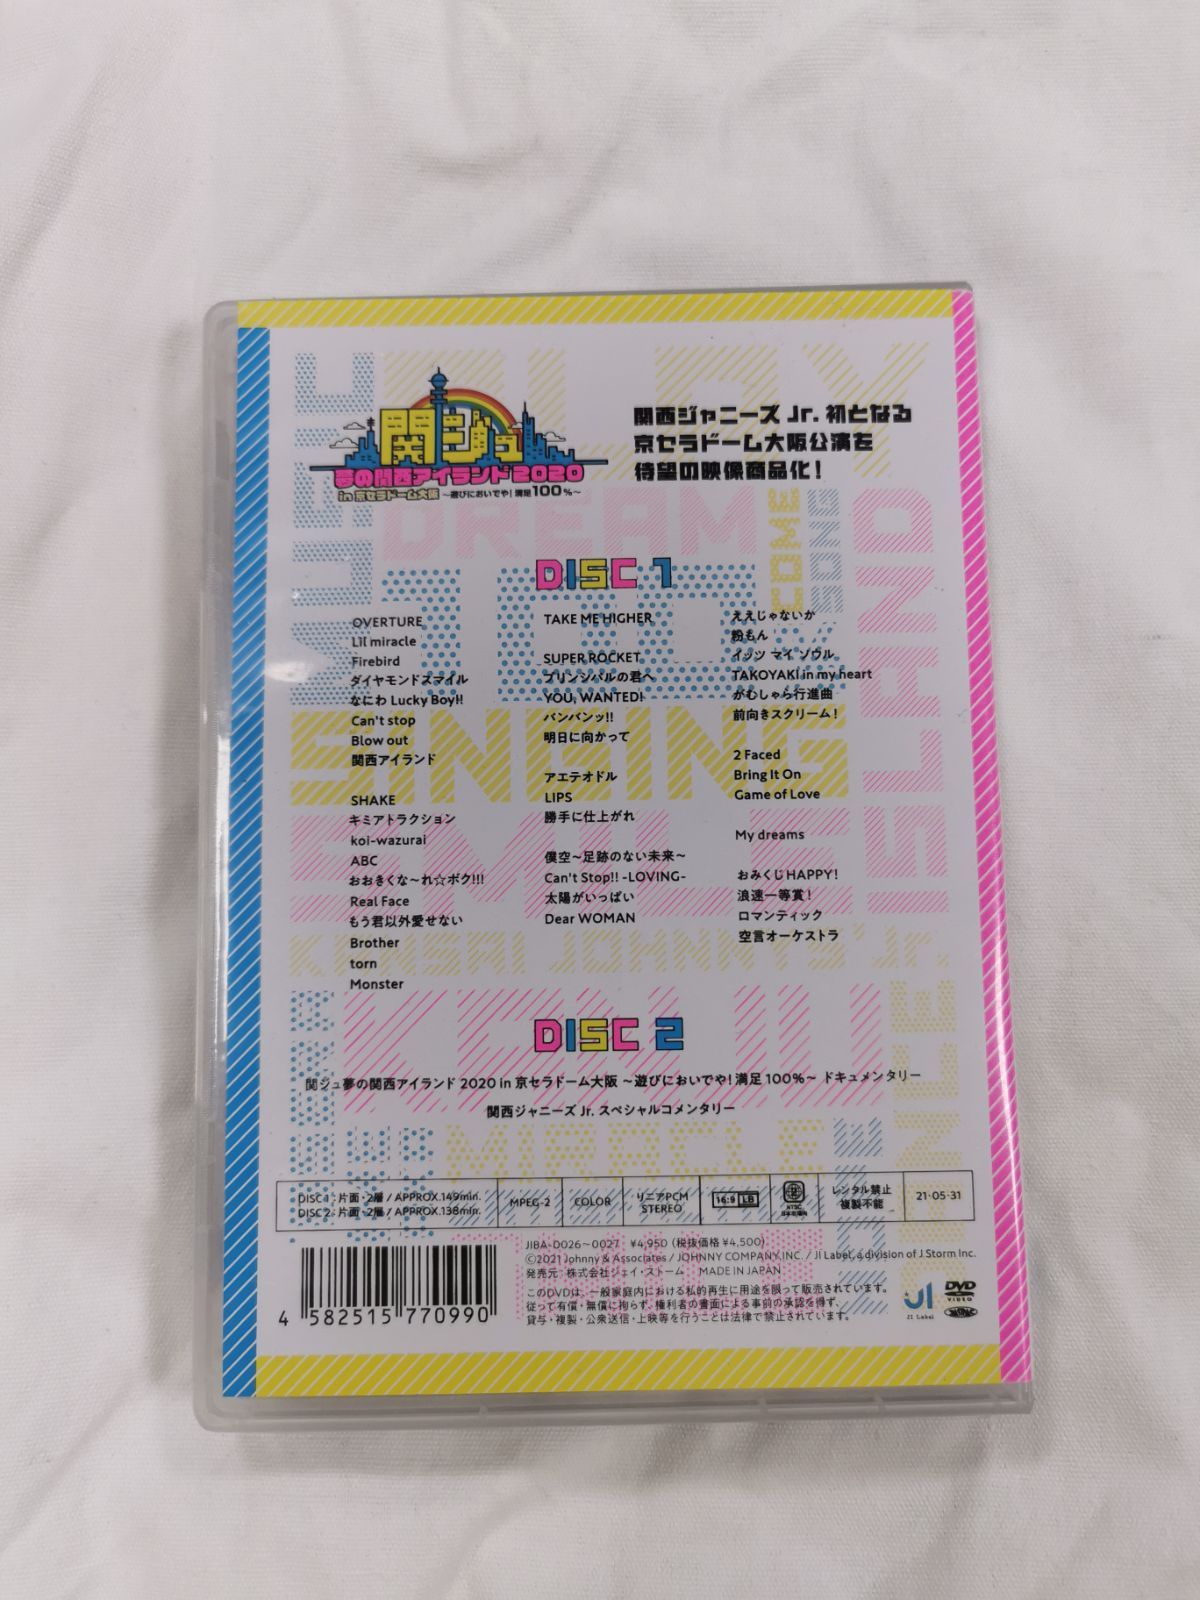 タレントグ£ 関ジュ 夢の関西アイランド2020 in京セラ DVD 最終値下げ